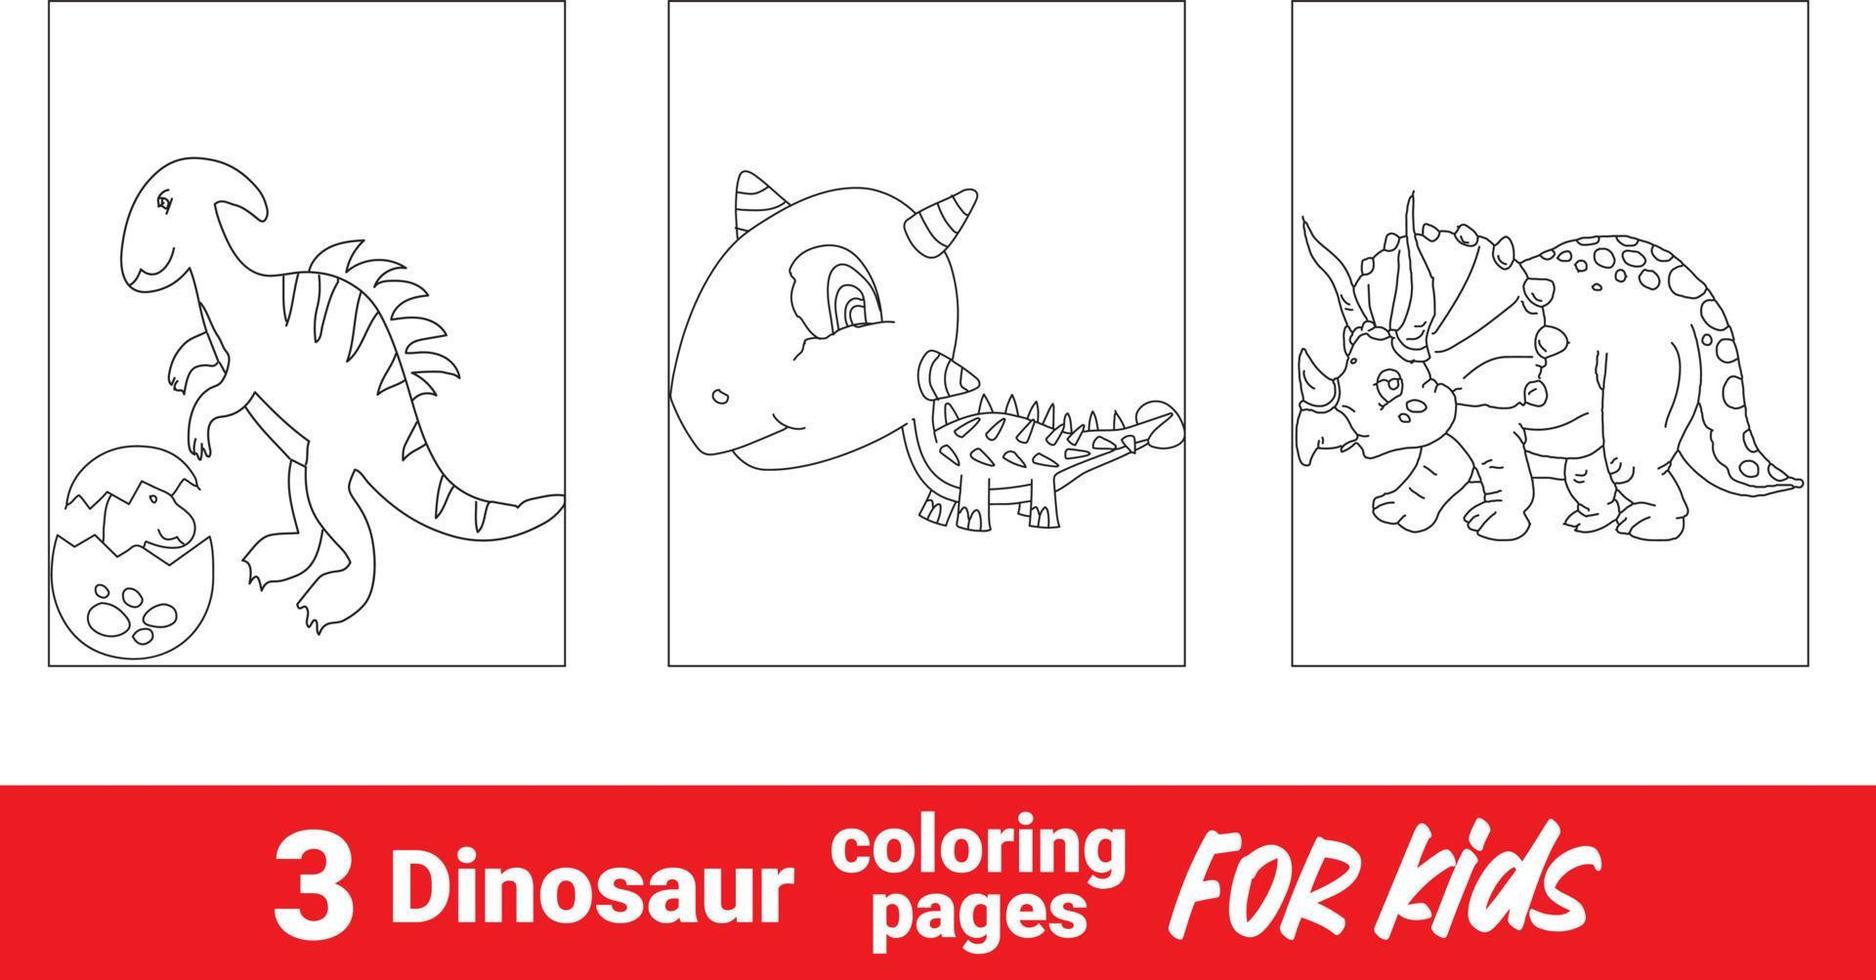 divertido livro de colorir de dinossauro para crianças. cena de contorno de coloração de paisagem pré-histórica de fundo animal bonito. estegossauro de dinossauro pré-histórico dos desenhos animados, livro para colorir, ilustração engraçada vetor